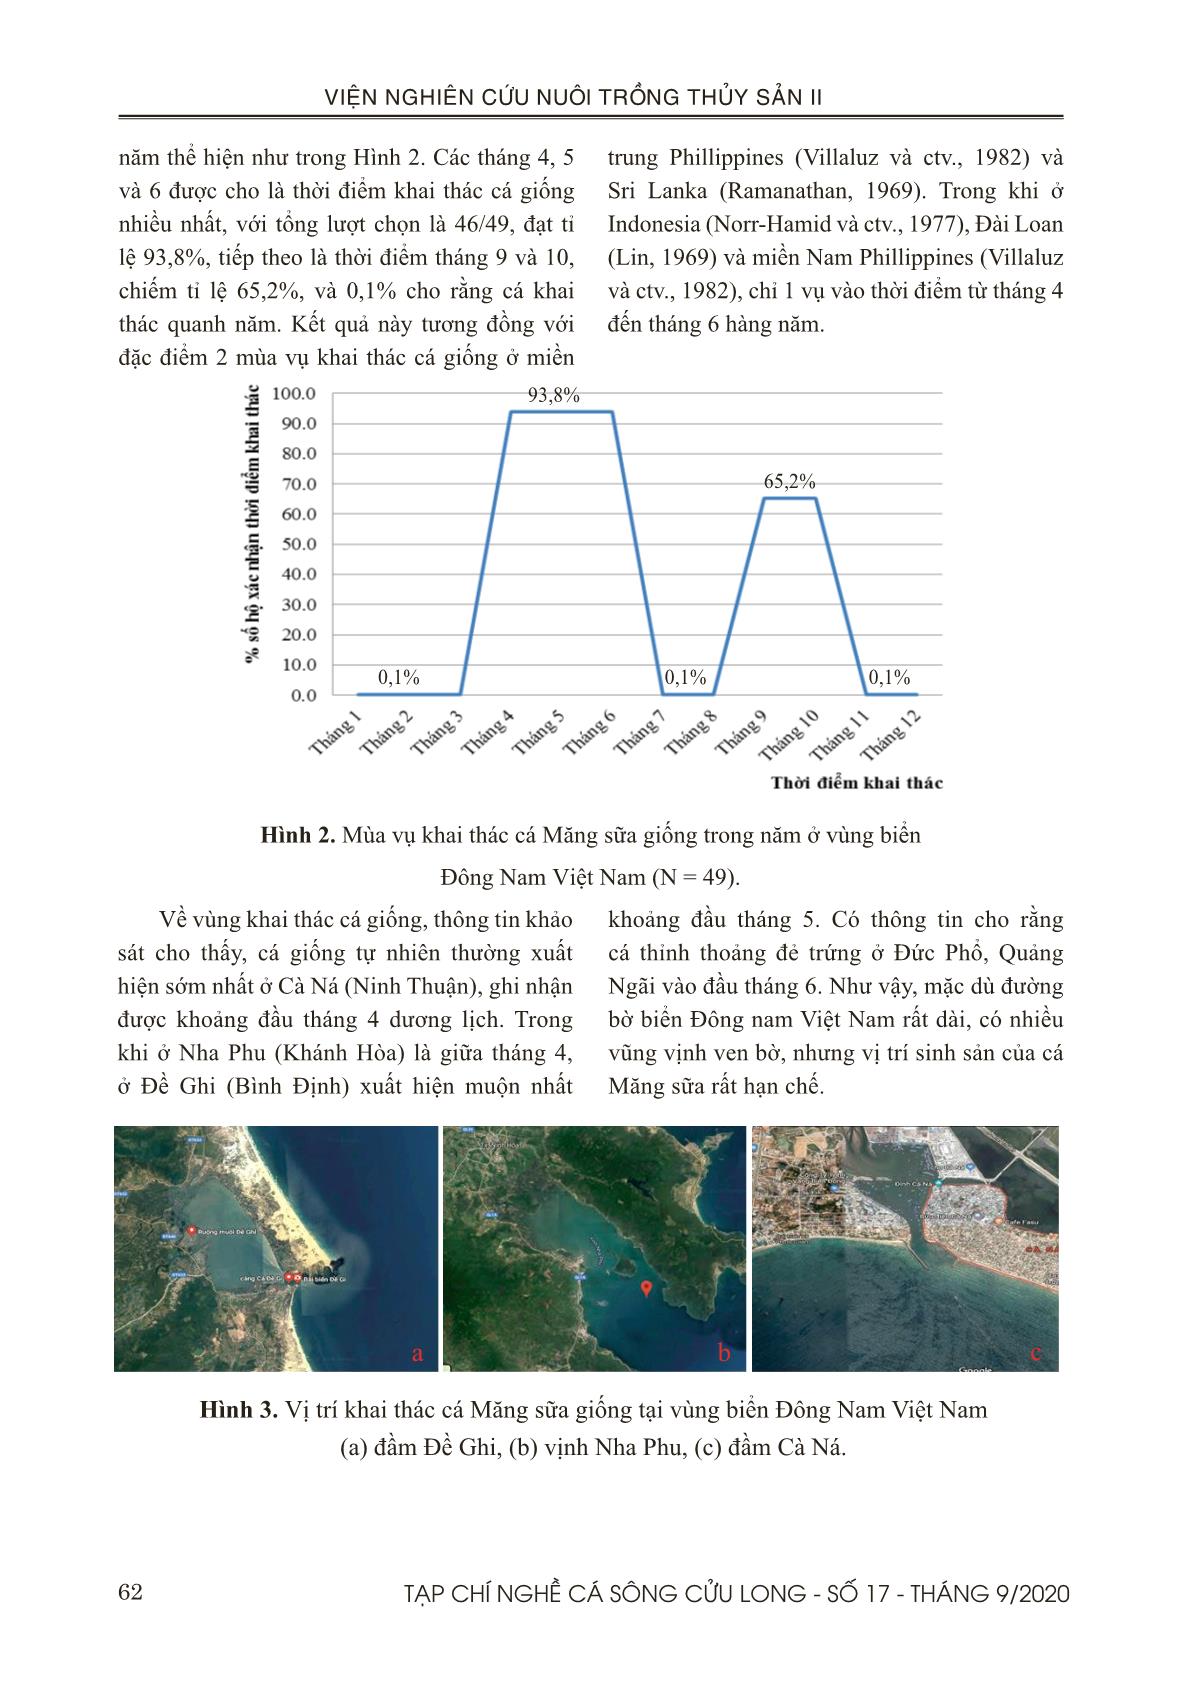 Hiện trạng khai thác và phát triển nuôi cá măng sữa (chanos chanos) ở vùng biển đông nam Việt Nam trang 5